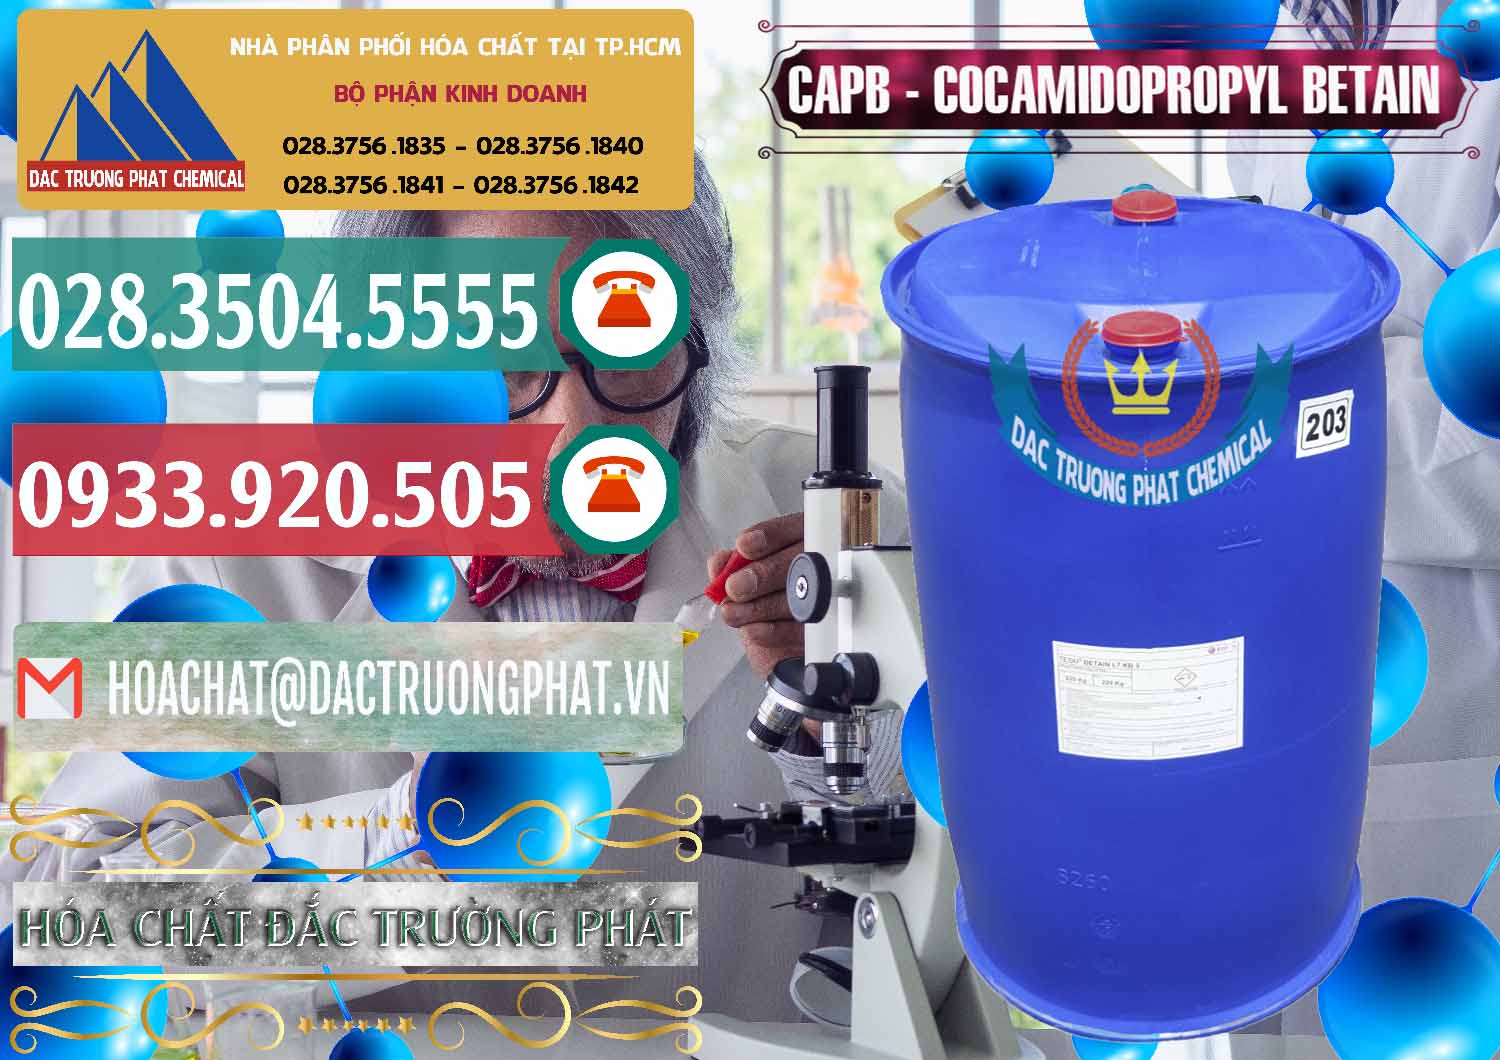 Bán ( cung ứng ) Cocamidopropyl Betaine - CAPB Tego Indonesia - 0327 - Cty chuyên cung cấp ( bán ) hóa chất tại TP.HCM - muabanhoachat.vn